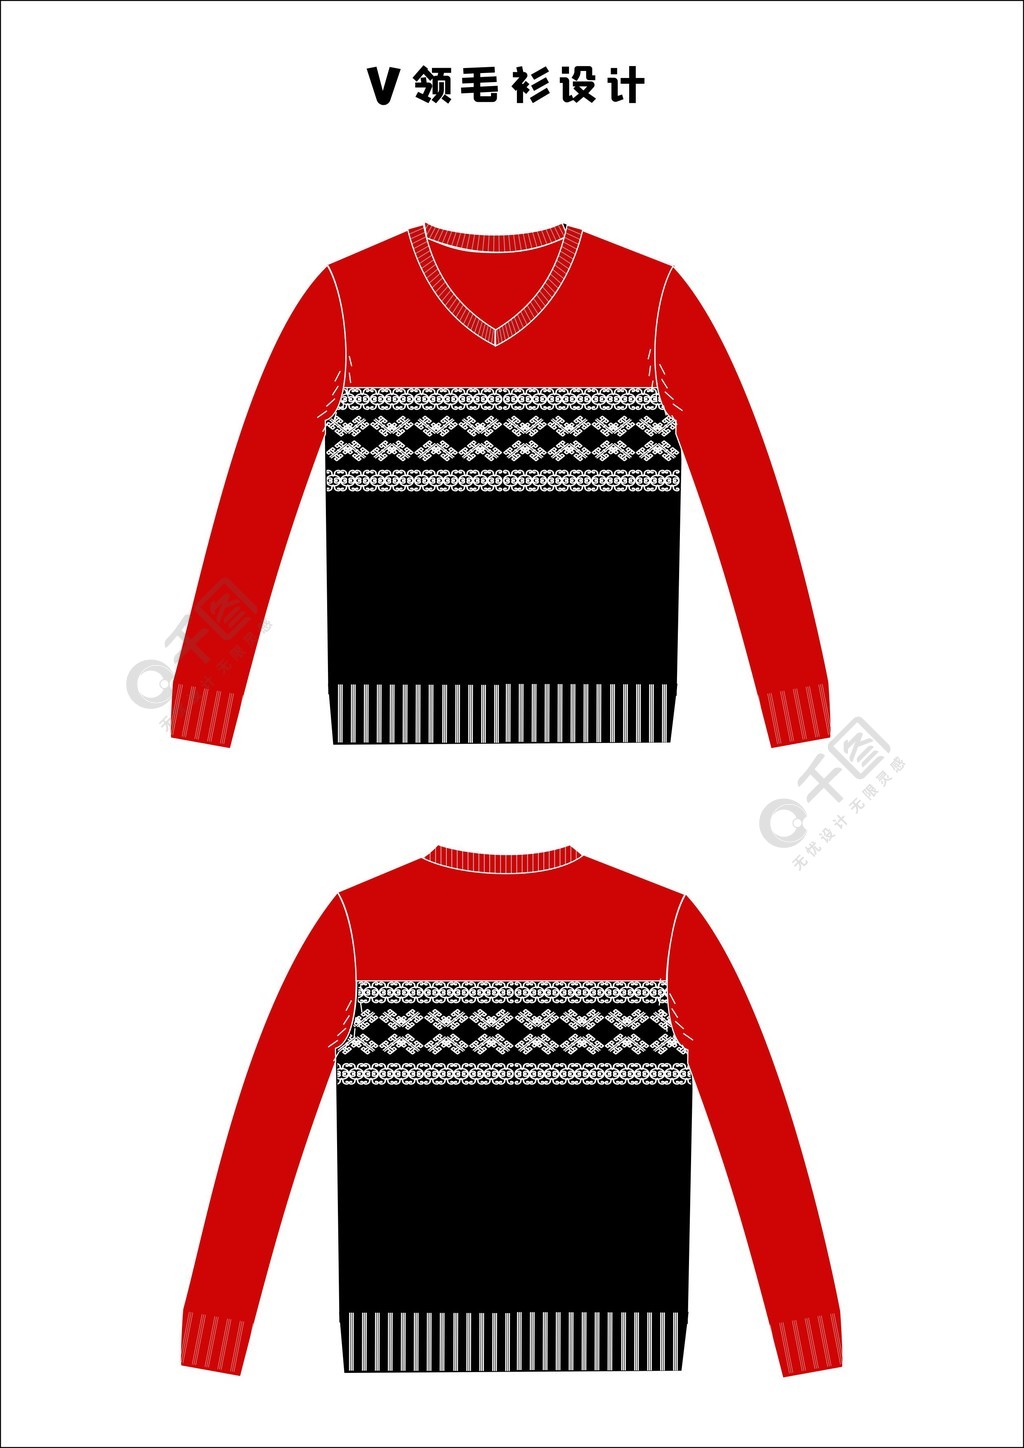 服装设计v领毛衫矢量素材效果图cdr格式1年前发布